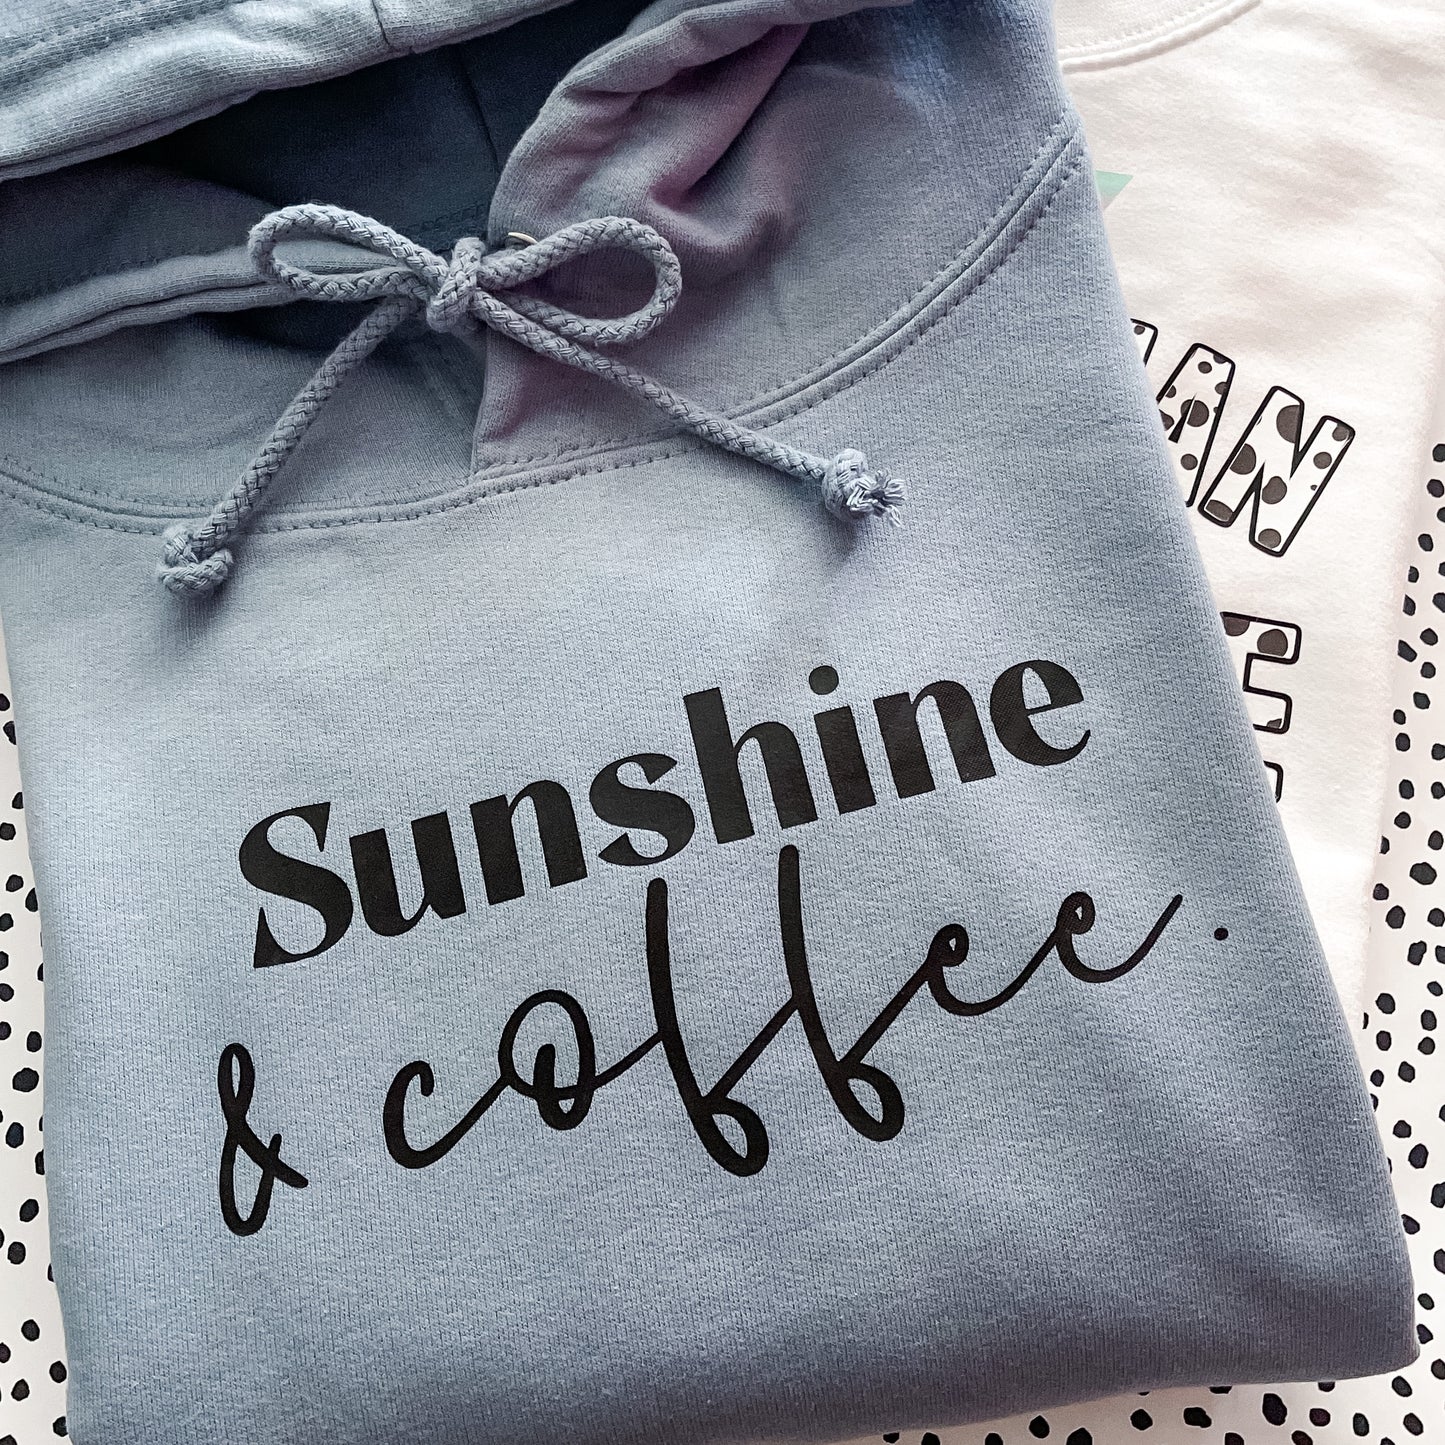 Sunshine & Coffee Hoodie